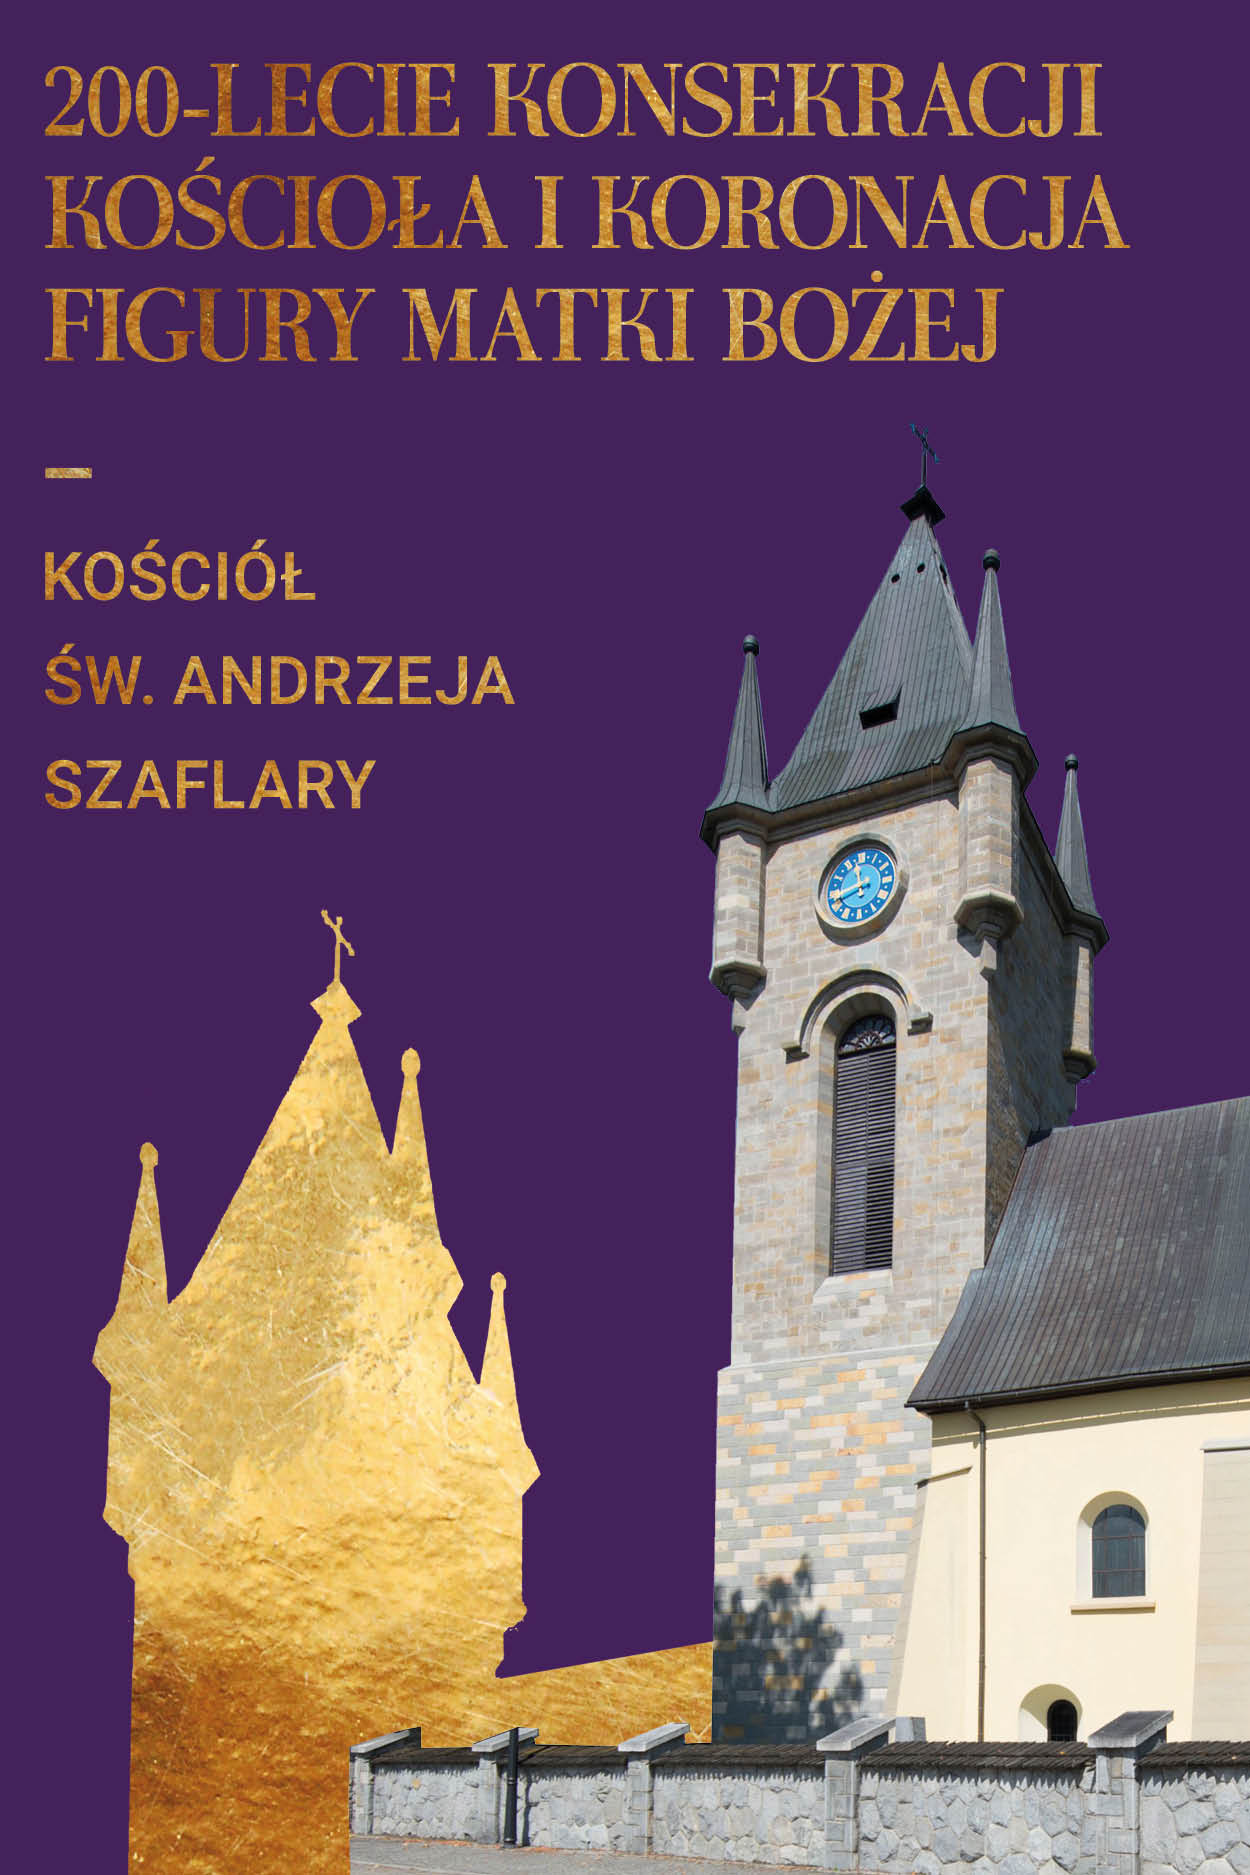 200-lecie konsekracji kościoła św. Andrzeja w Szaflarach i koronacja figury Matki Bożej